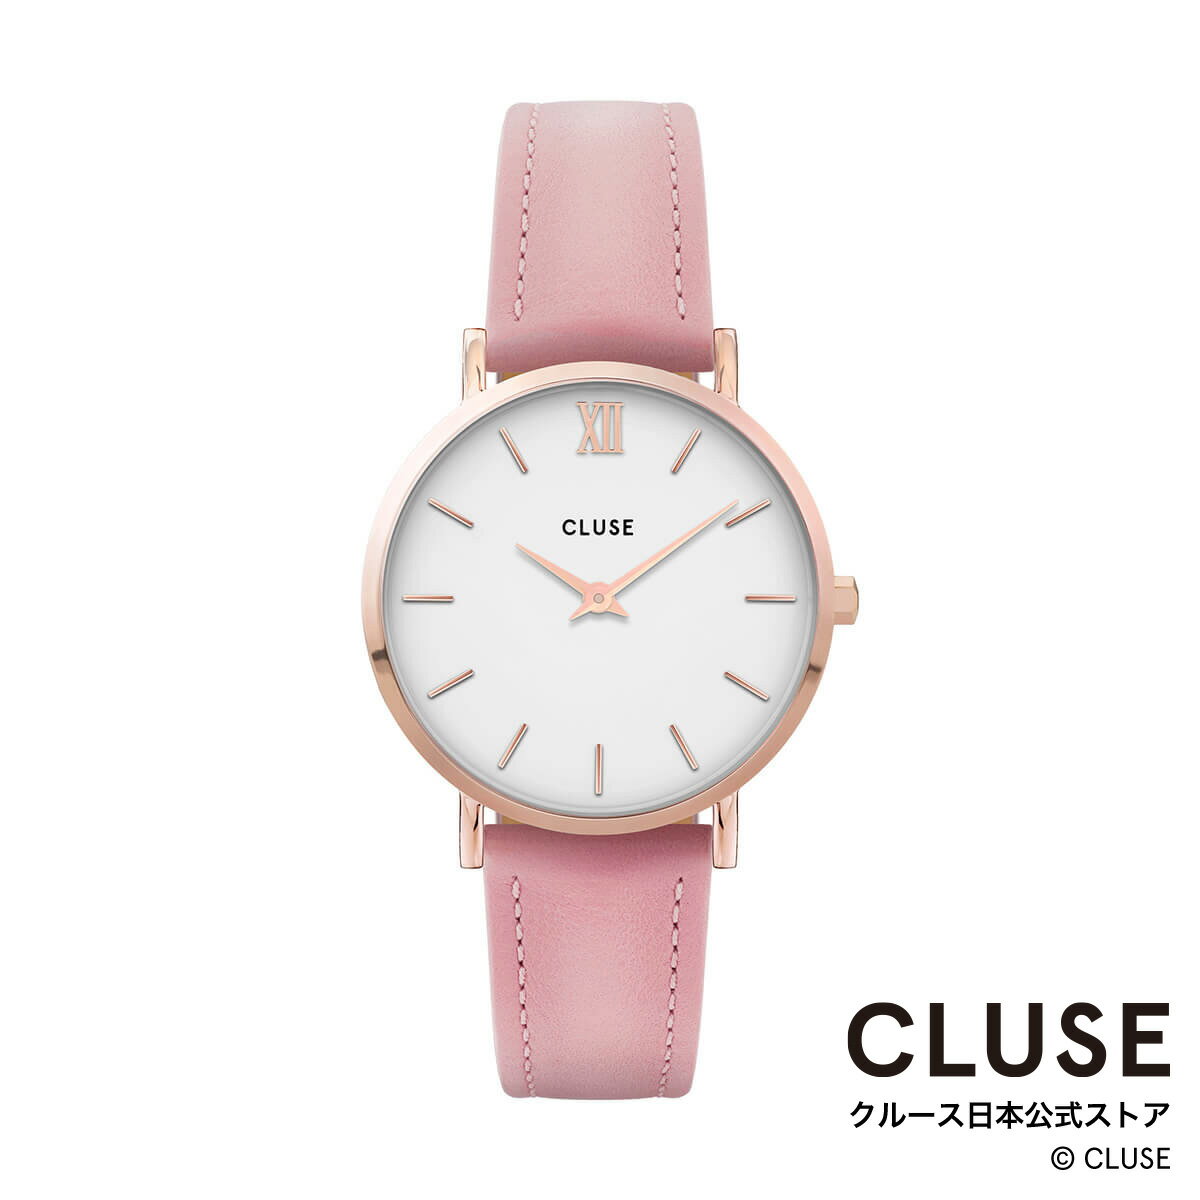 クルース ビジネス腕時計 レディース クルース CLUSE 日本公式ストア ミニュイ ローズゴールド ホワイト ピンク レディース 女性 腕時計 時計 防水 クォーツ